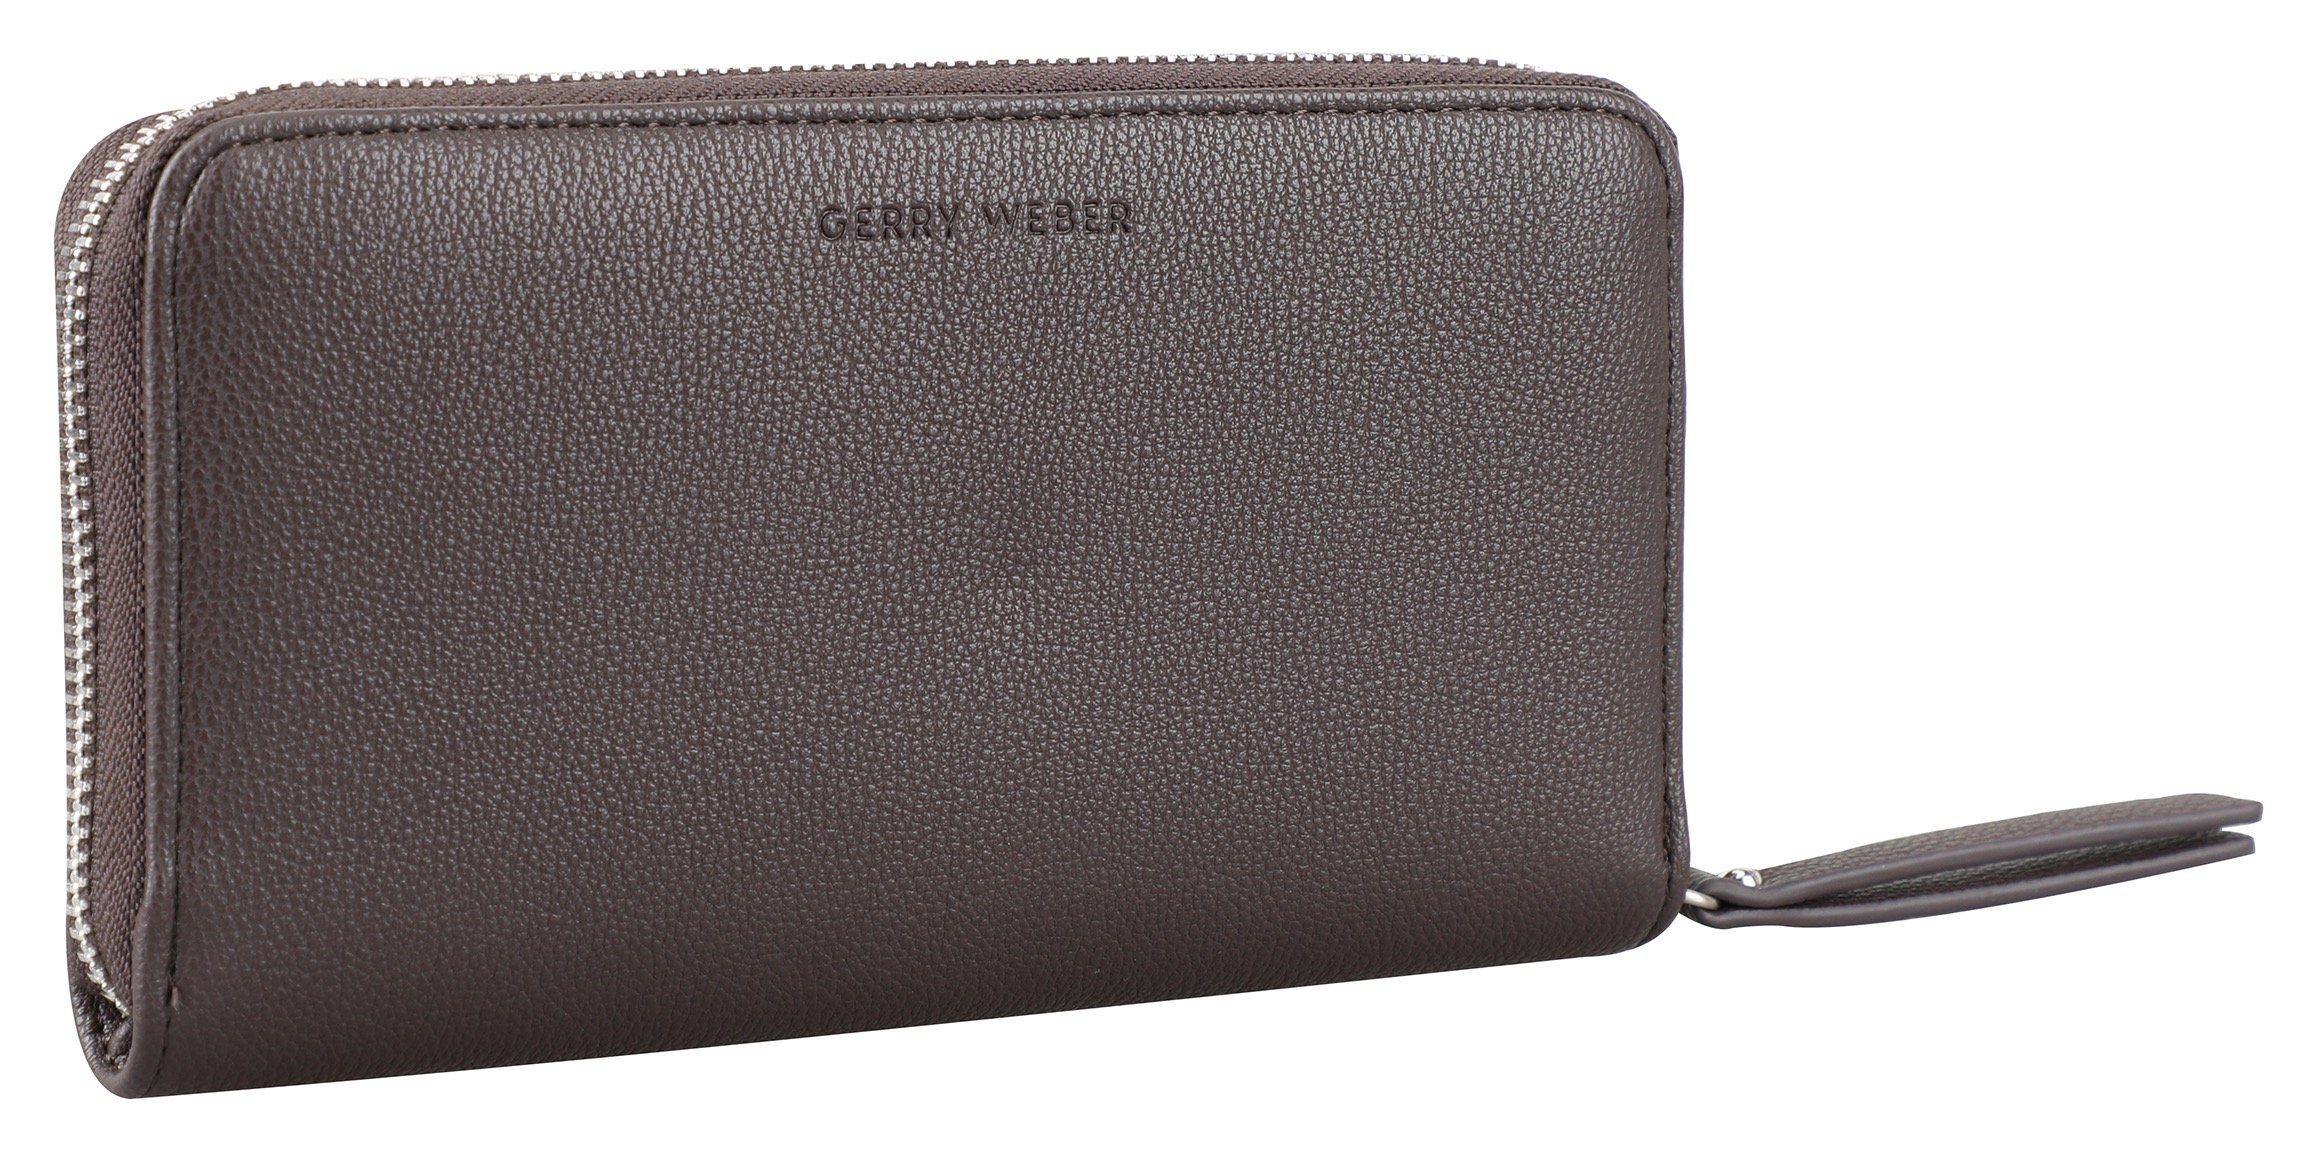 GERRY WEBER Bags Geldbörse daily use purse lh13z, mit viel Stauraum darkbrown